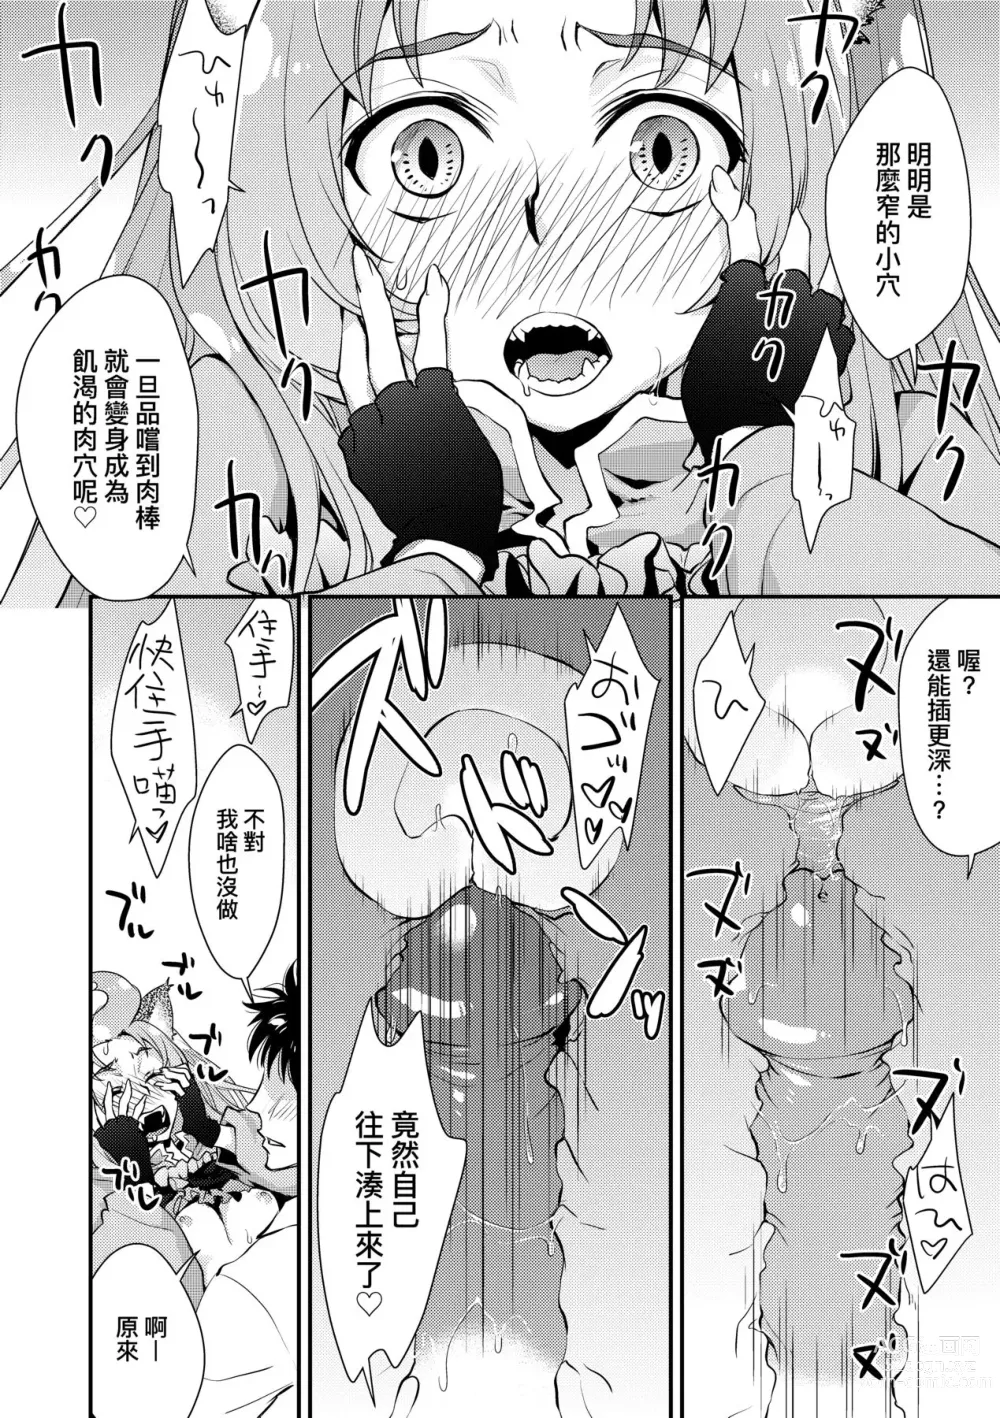 Page 205 of manga Echiechi JK Houimou (decensored)